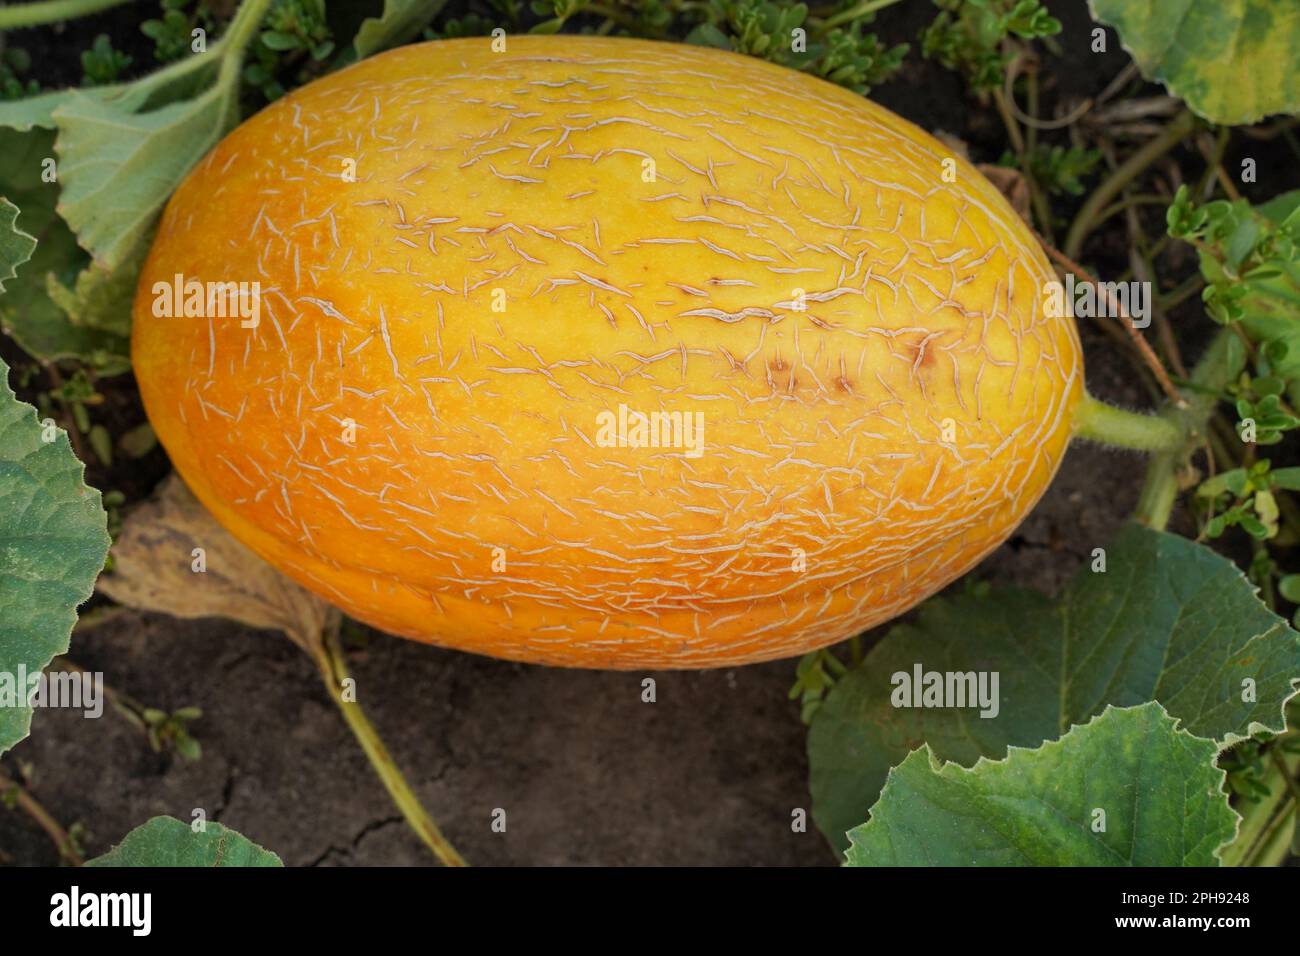 Frische reife, saftige Melone, die auf dem Feld wächst. Melone auf einem Bauernhof. Draufsicht, Nahaufnahme. Stockfoto